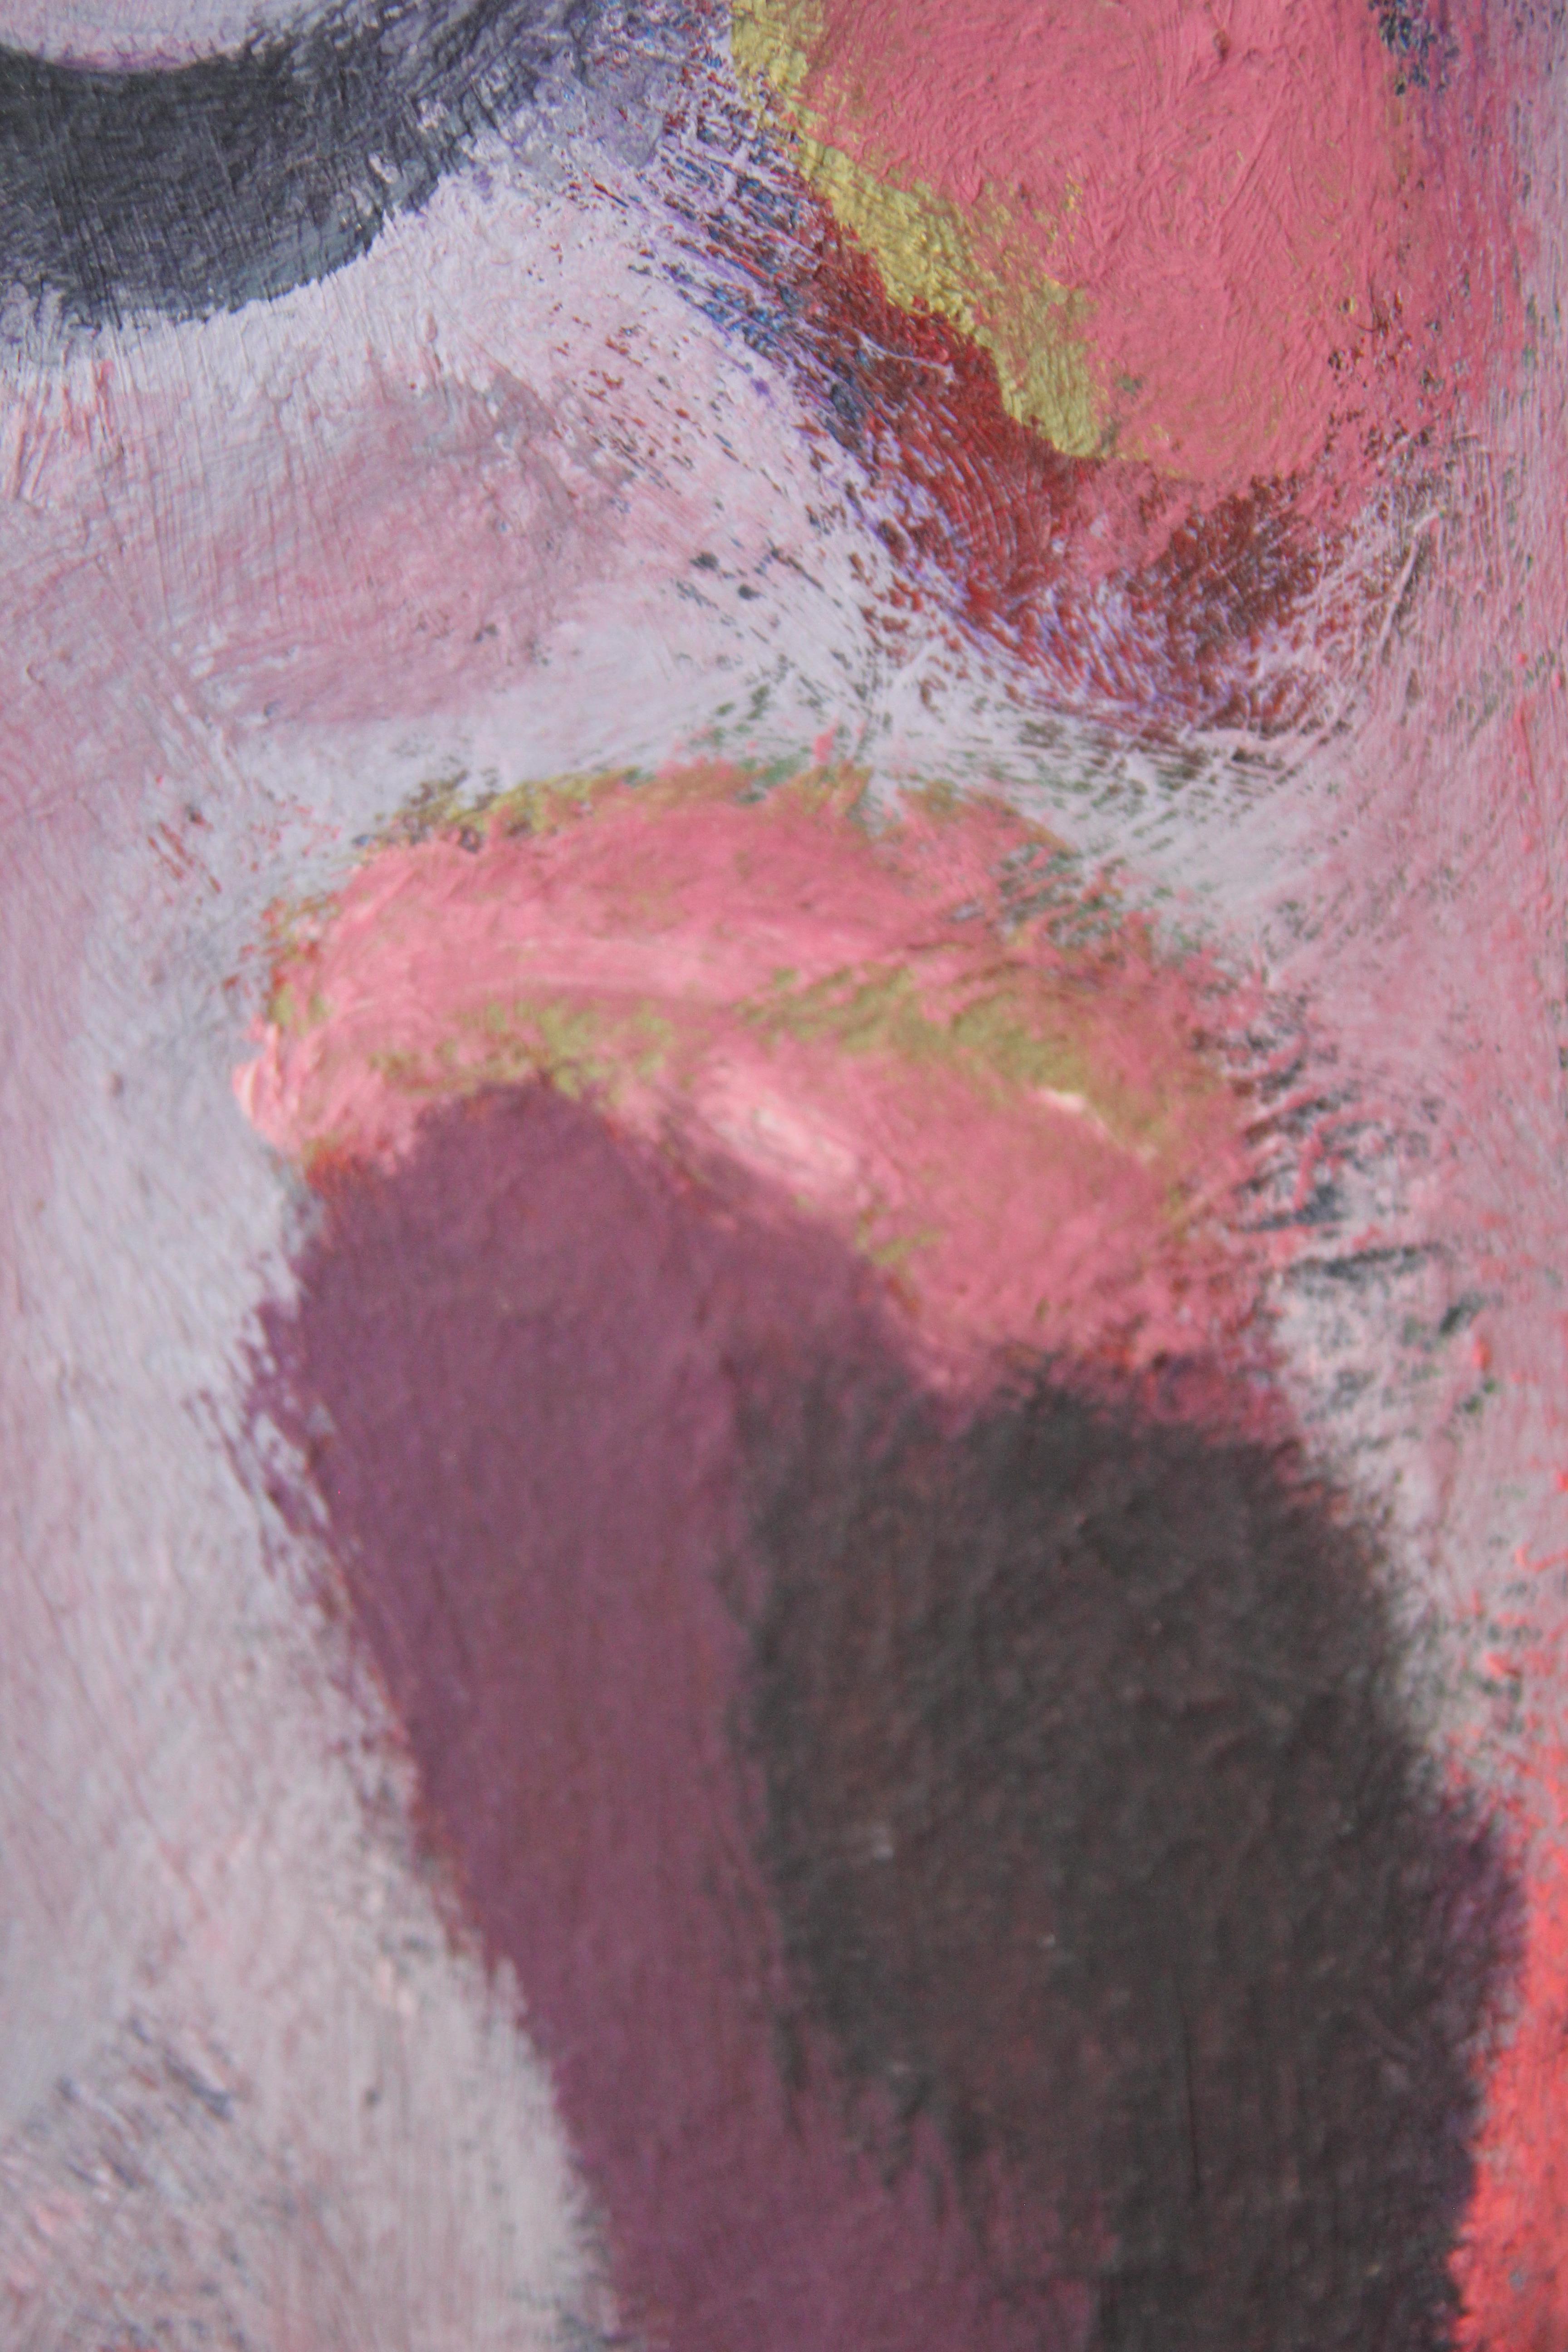 Peinture abstraite de Morris Gluckman représentant une ombre noire tenant un objet rose. 

Biographie de l'artiste : Morris Gluckman est né en 1894 à Kiev, en Russie. Il était un artiste actif à New York et était connu pour ses peintures de paysages